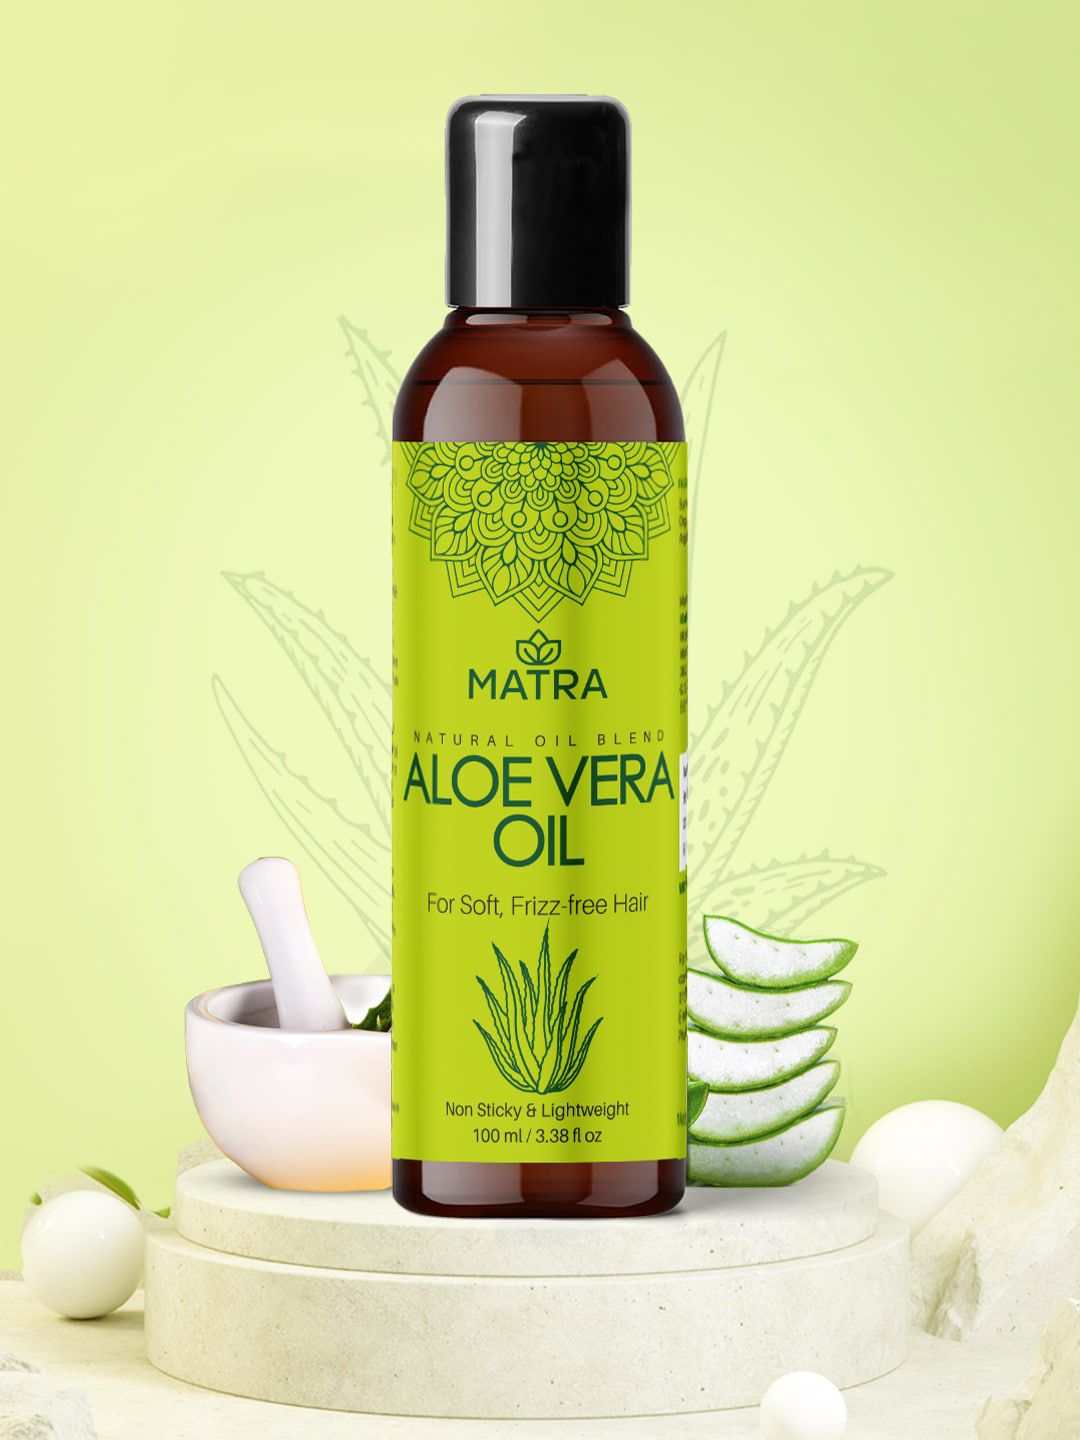 MATRA Aloe Vera Hair Oil 100ml Price in India